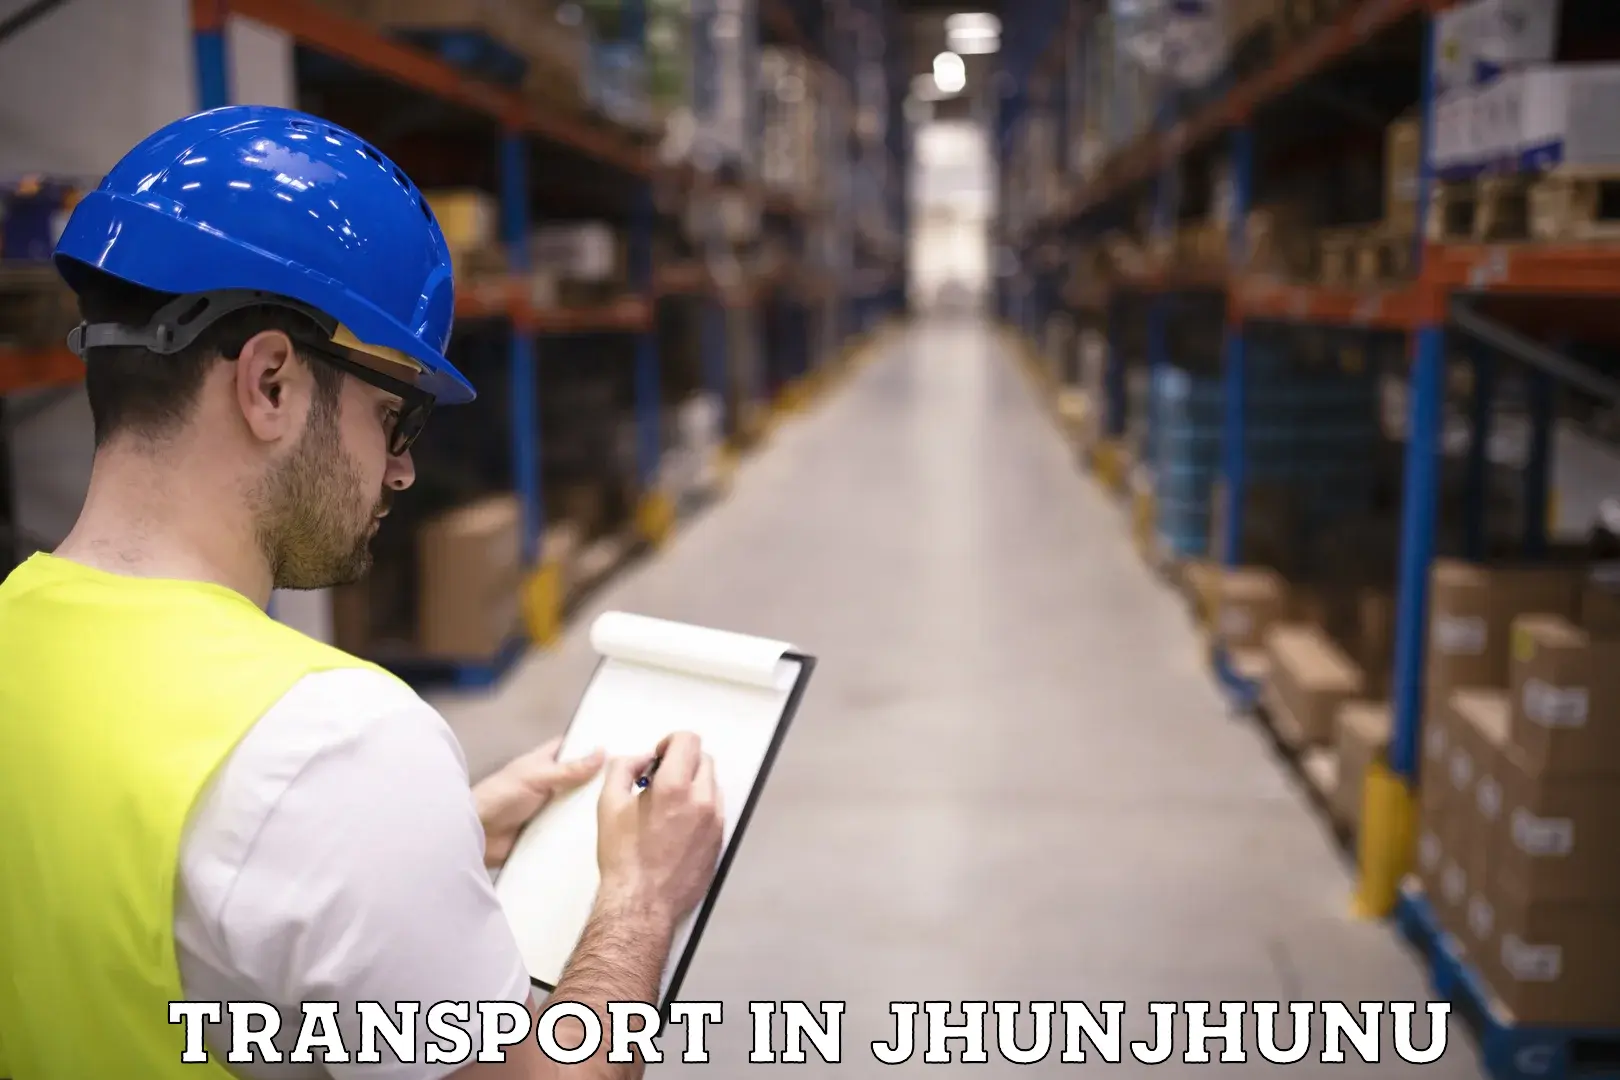 Nearest transport service in Jhunjhunu